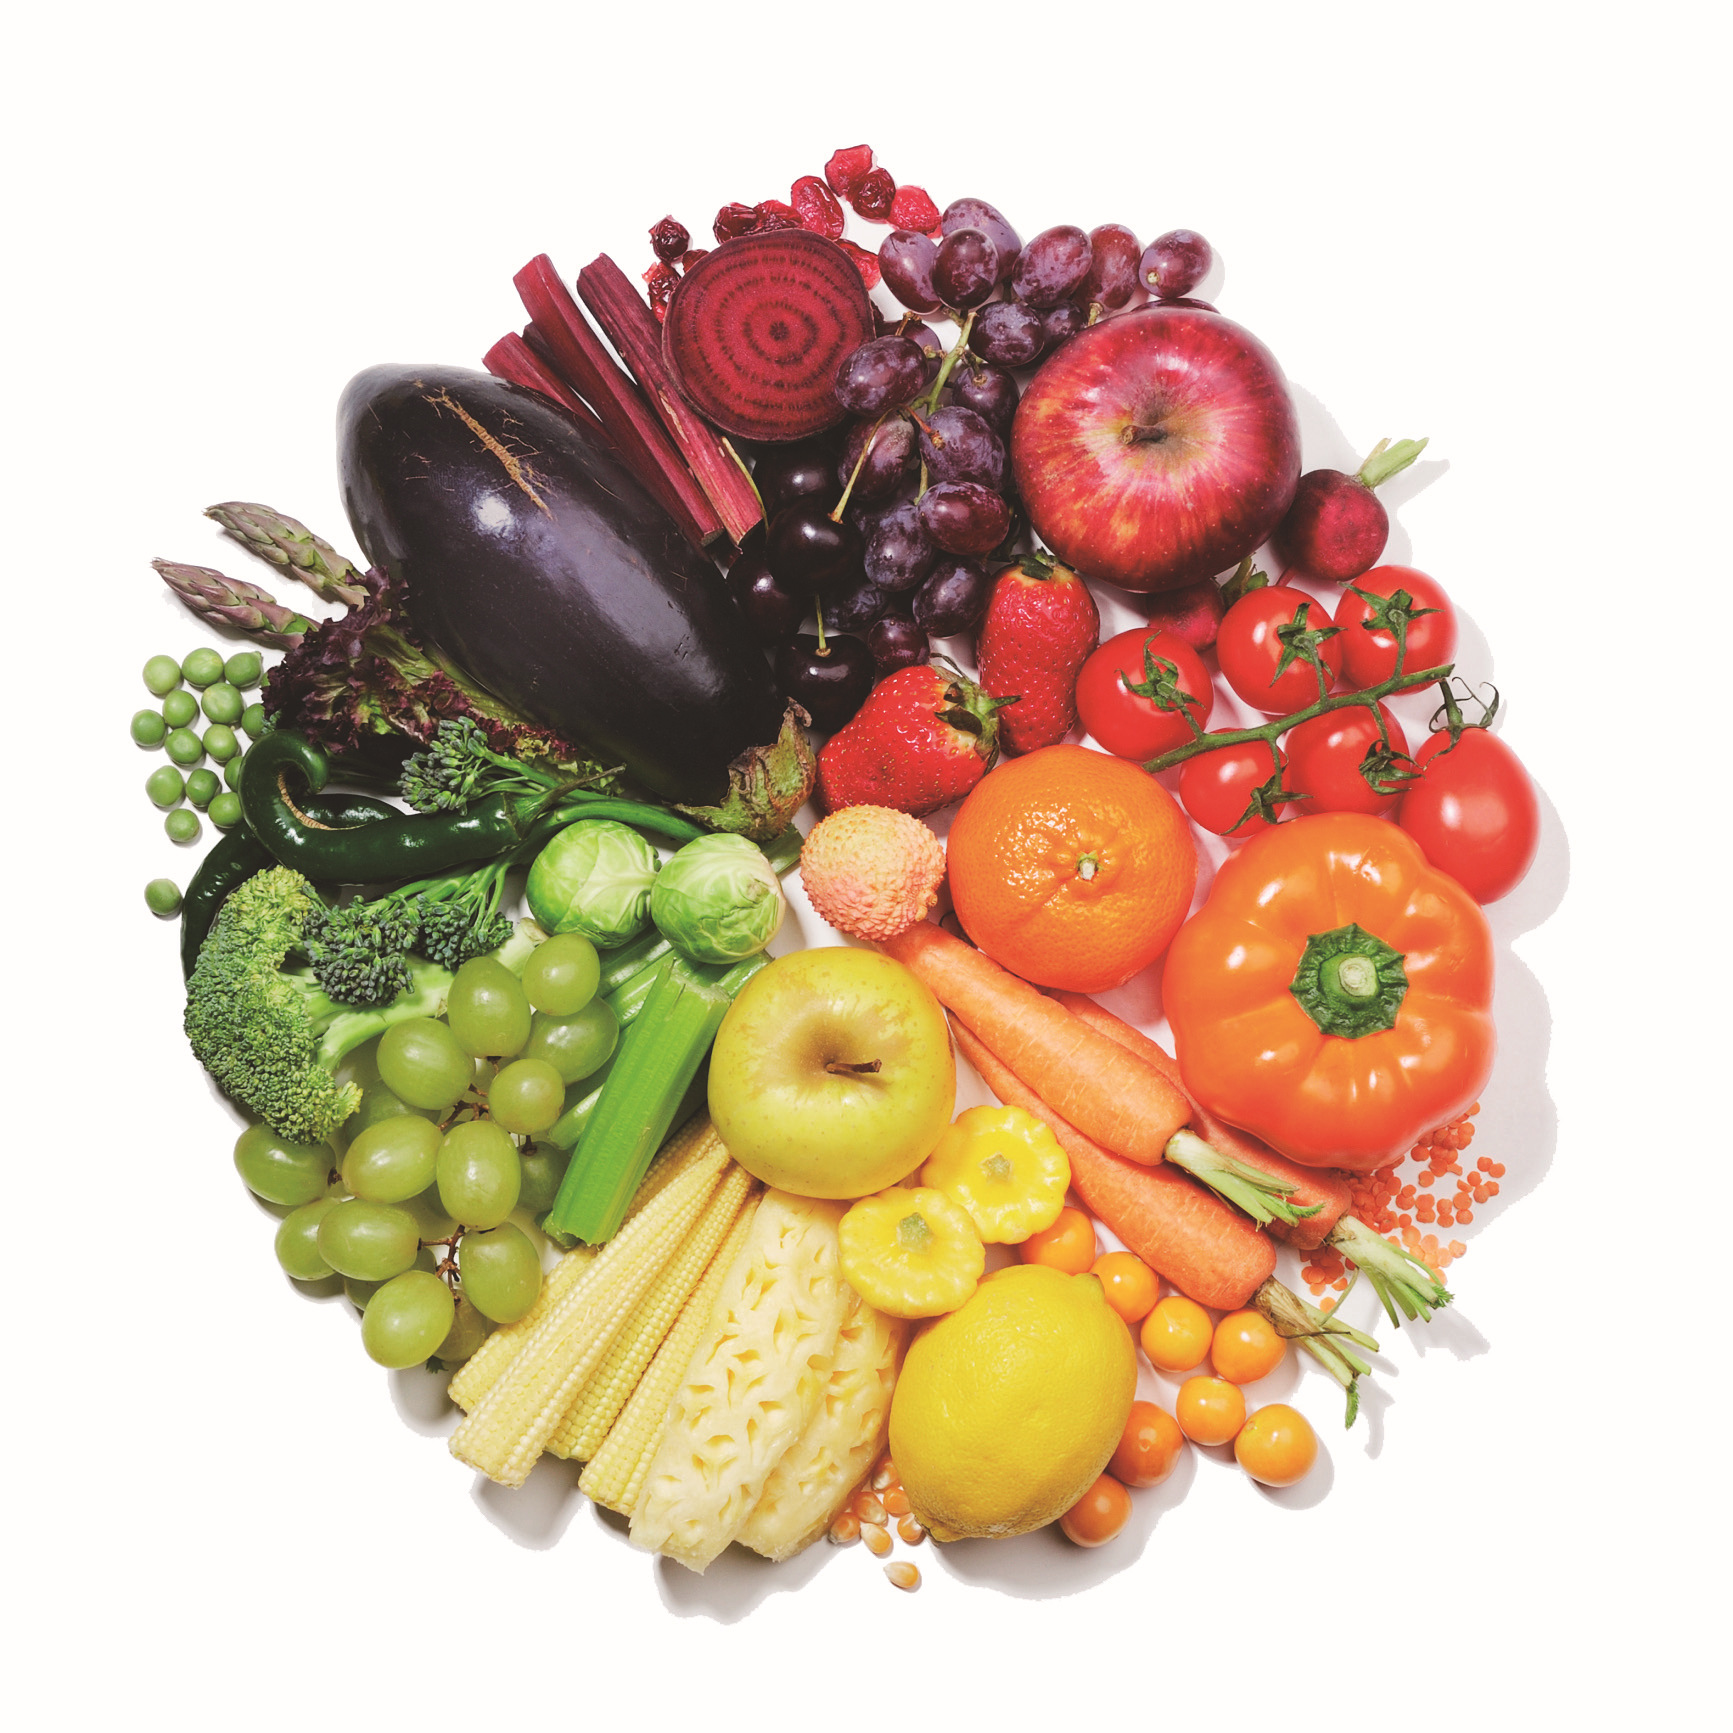 Кашам фруктам овощам. Овощи и фрукты. Разные фрукты и овощи. Здоровая еда. Obishi i frukti.